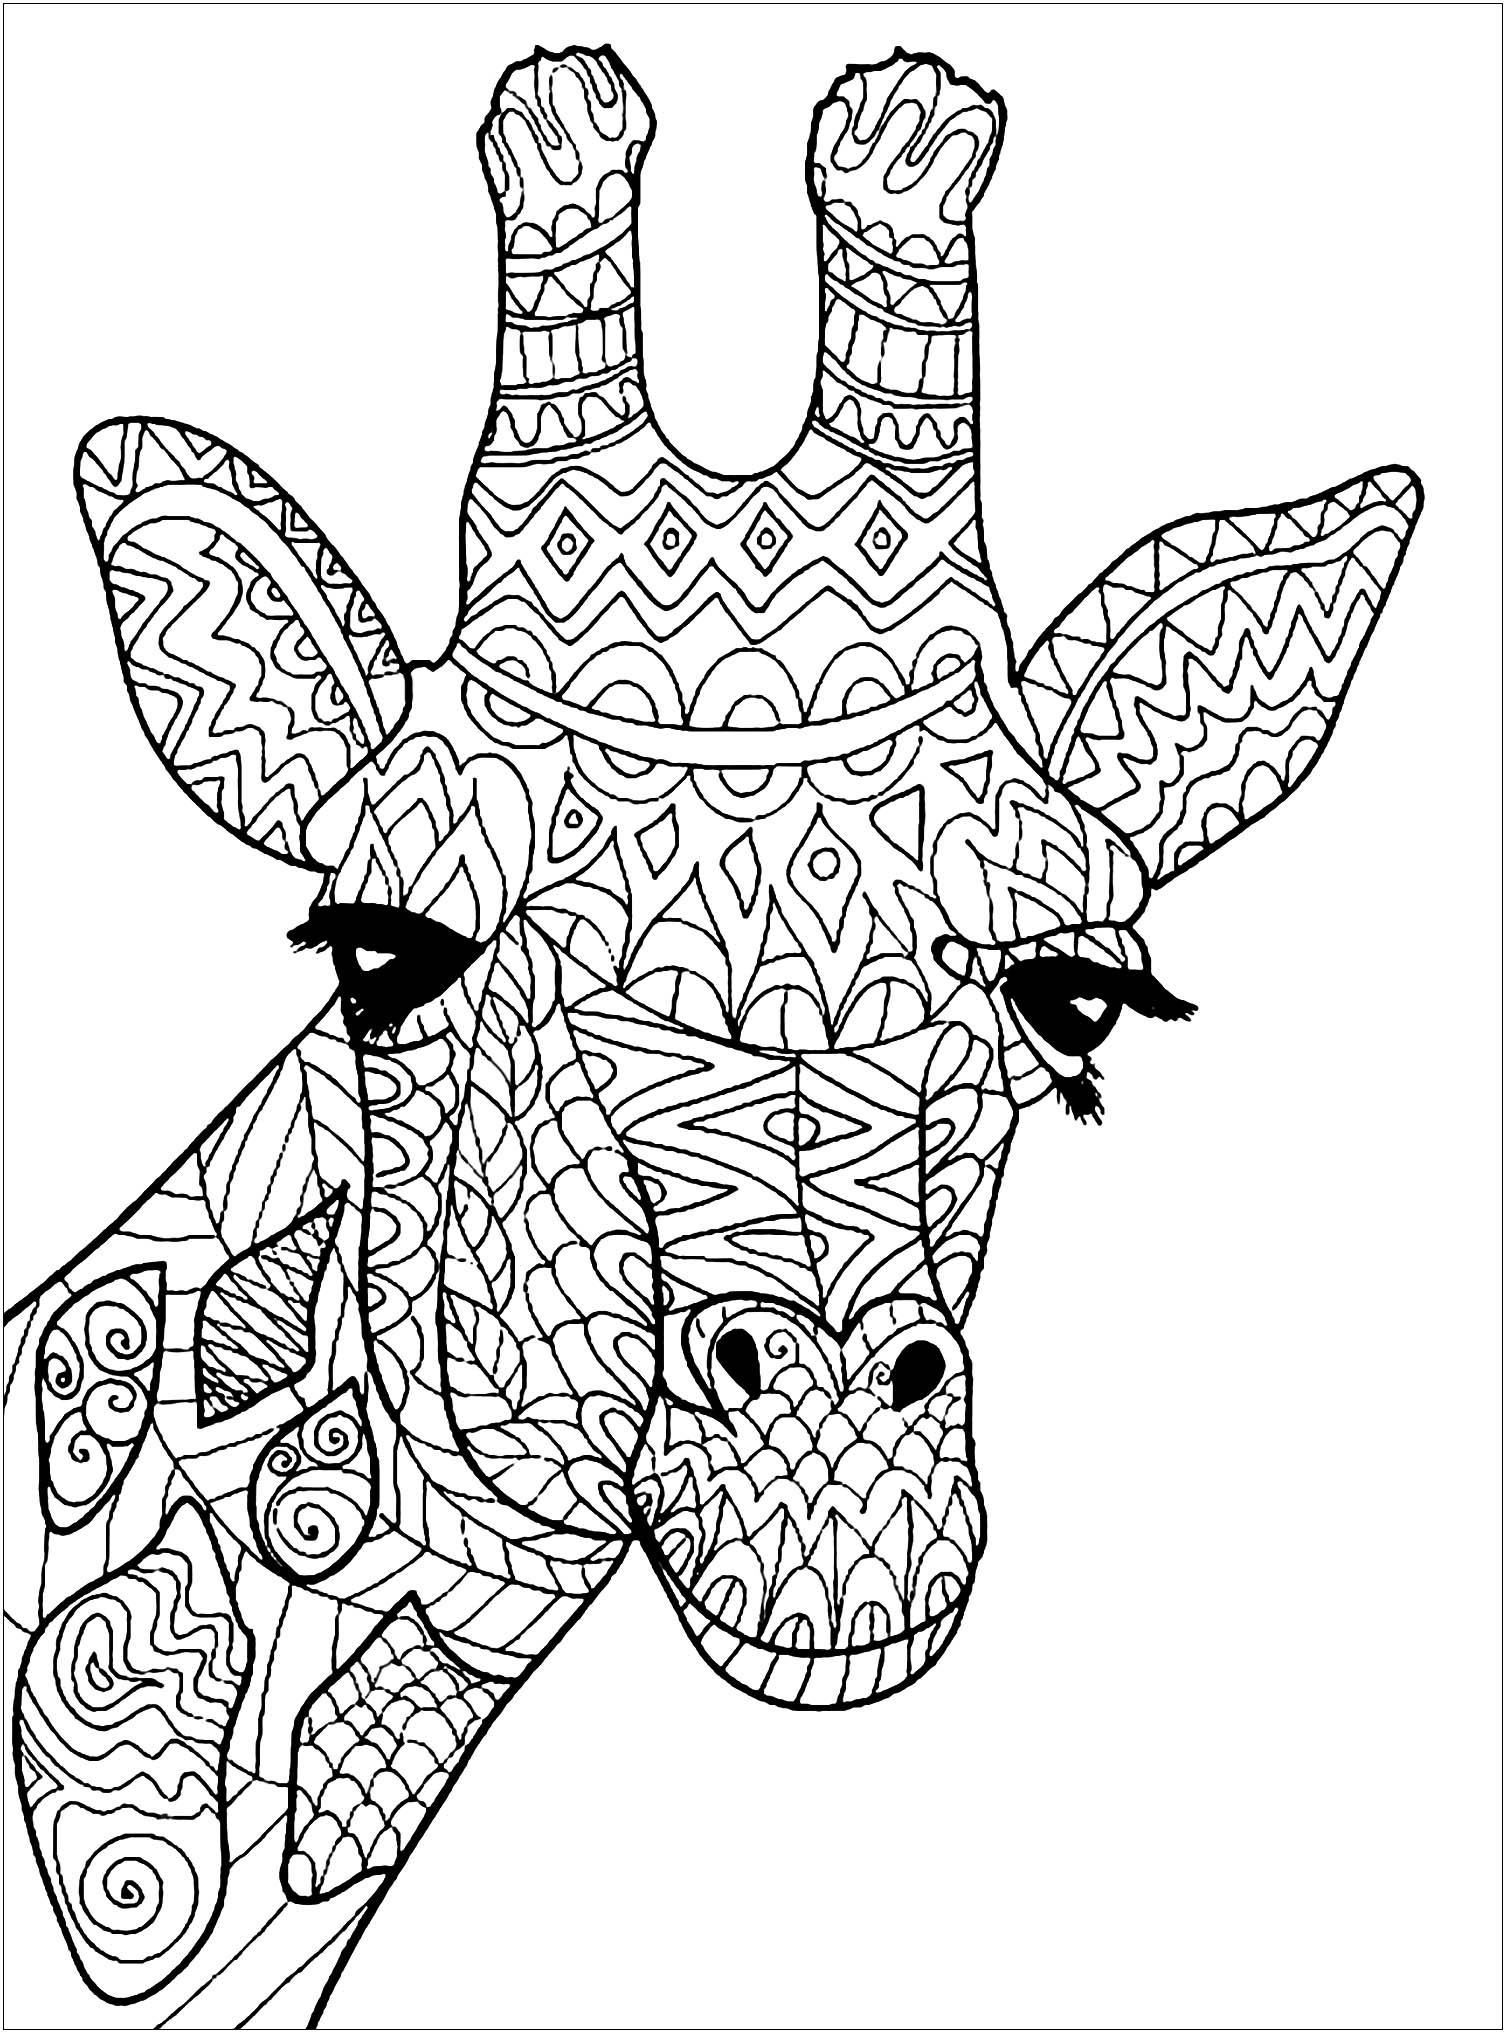 Disegni da Colorare per Adulti : Giraffe - 3